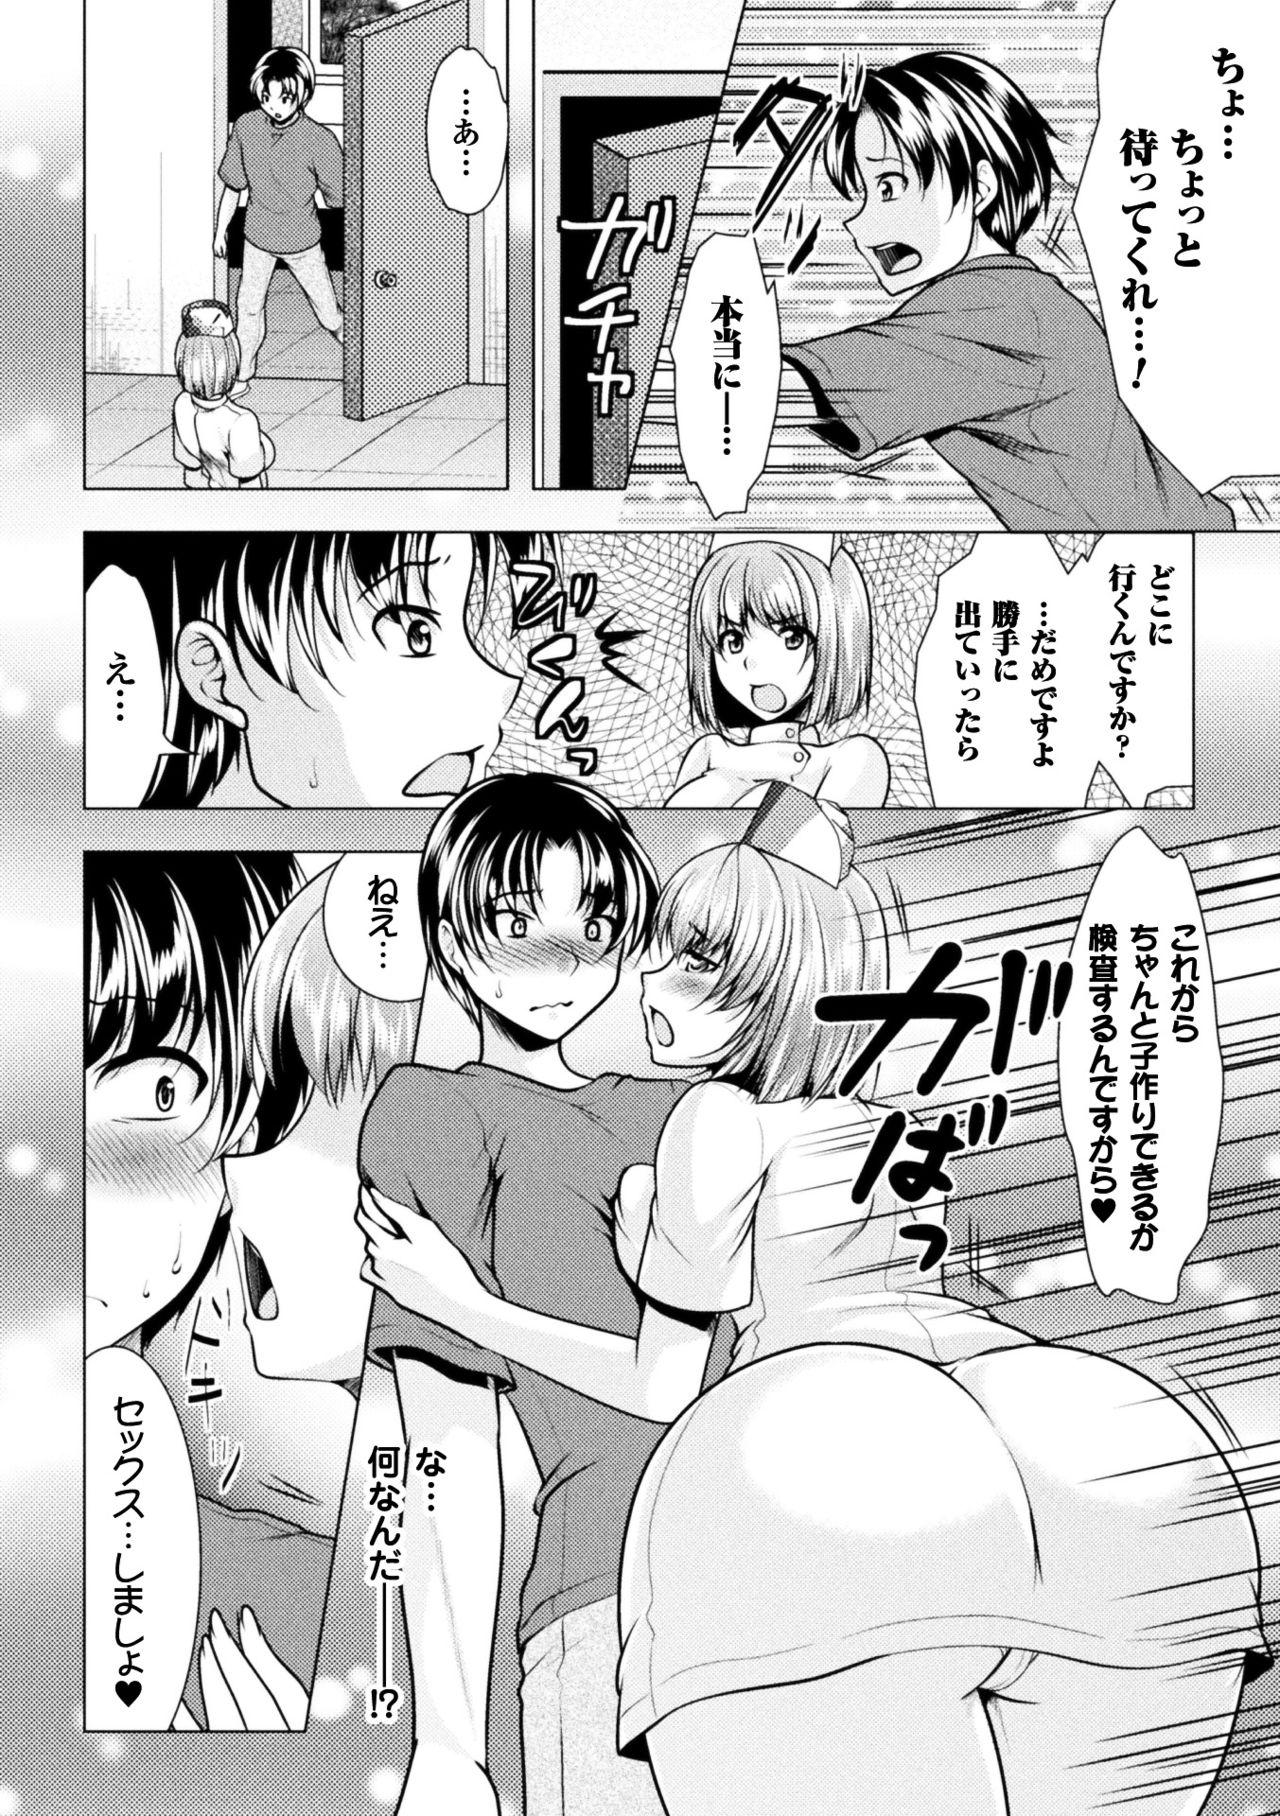 Pussylick 2D Comic Magazine Onna dake no Sekai de Boku wa mou Dame kamo Shirenai Vol.2 Putinha - Page 8